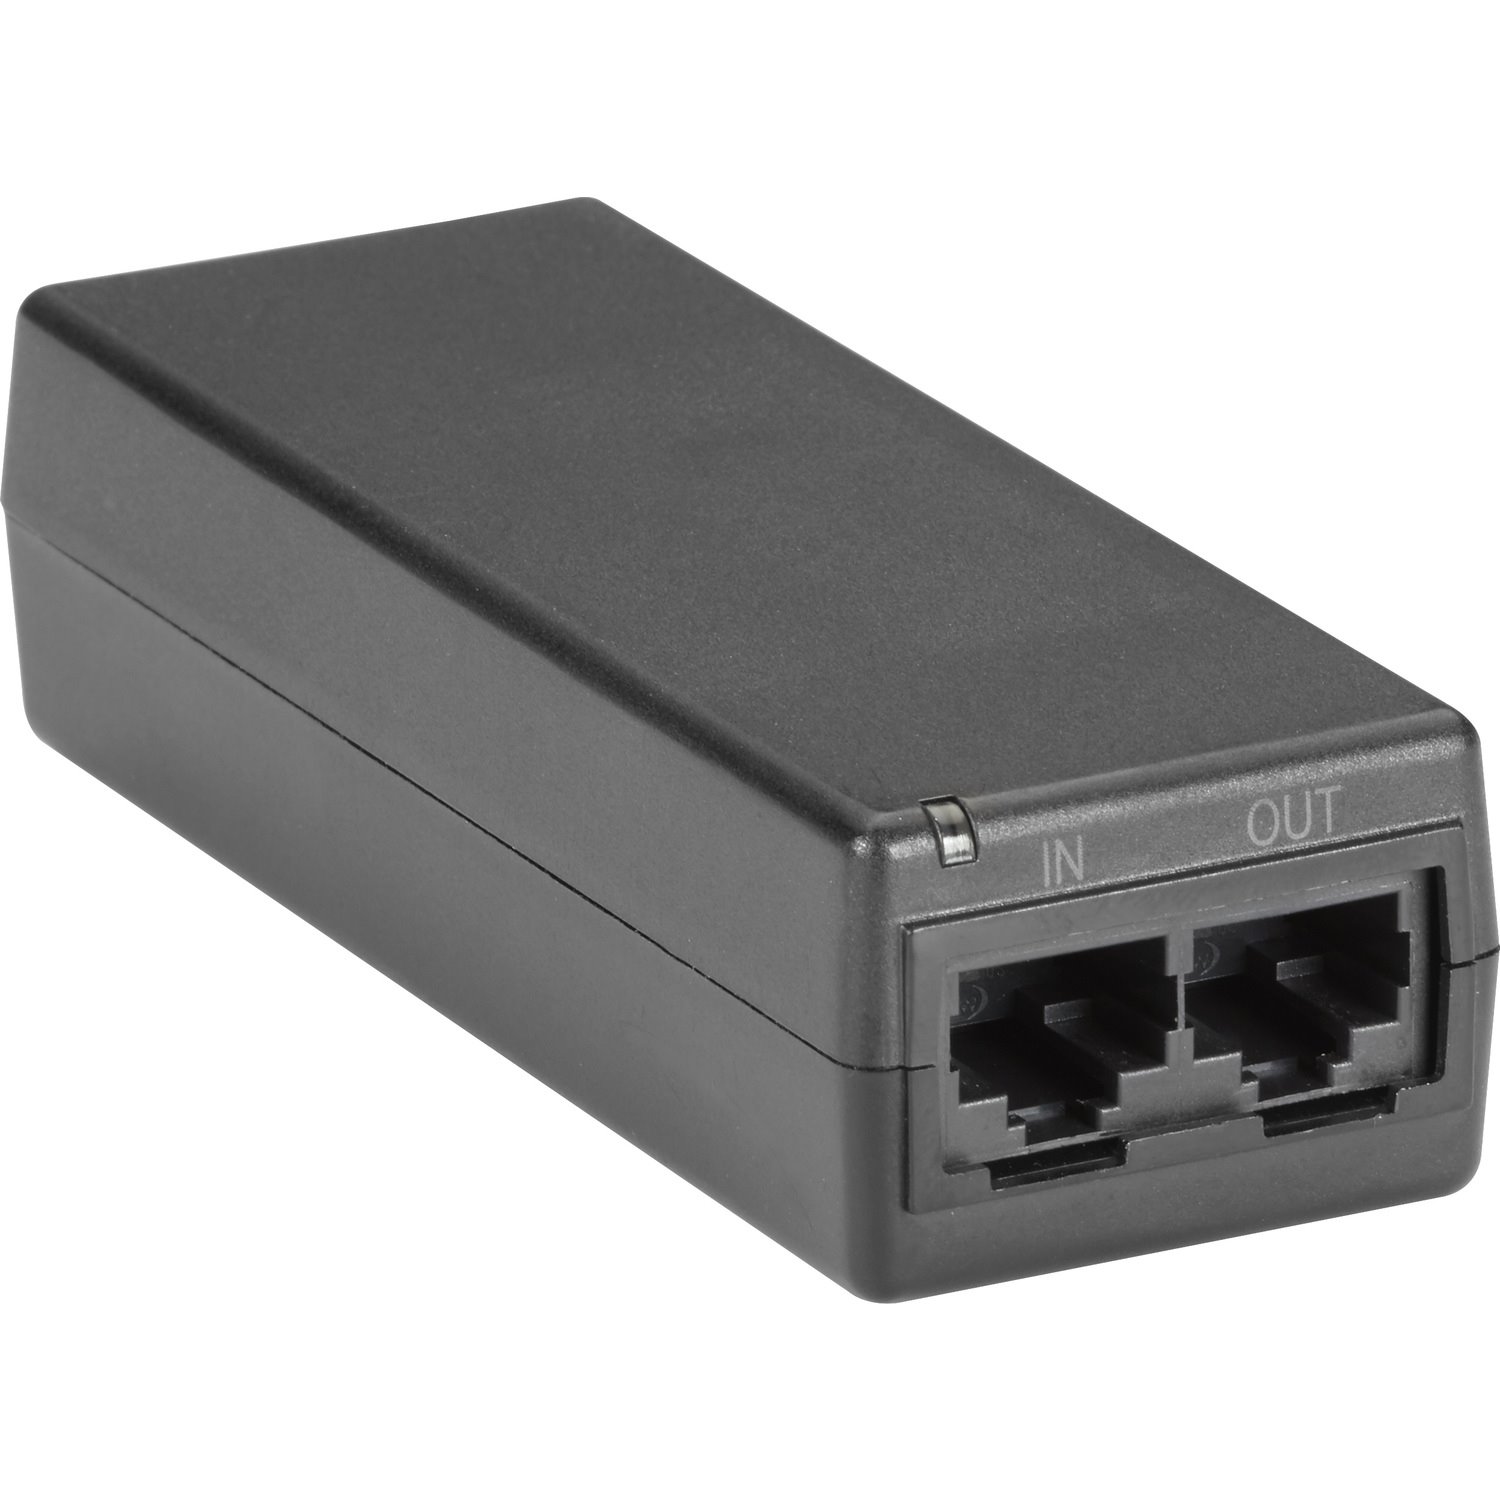 Black Box PoE Gigabit Ethernet Injector - 802.3af